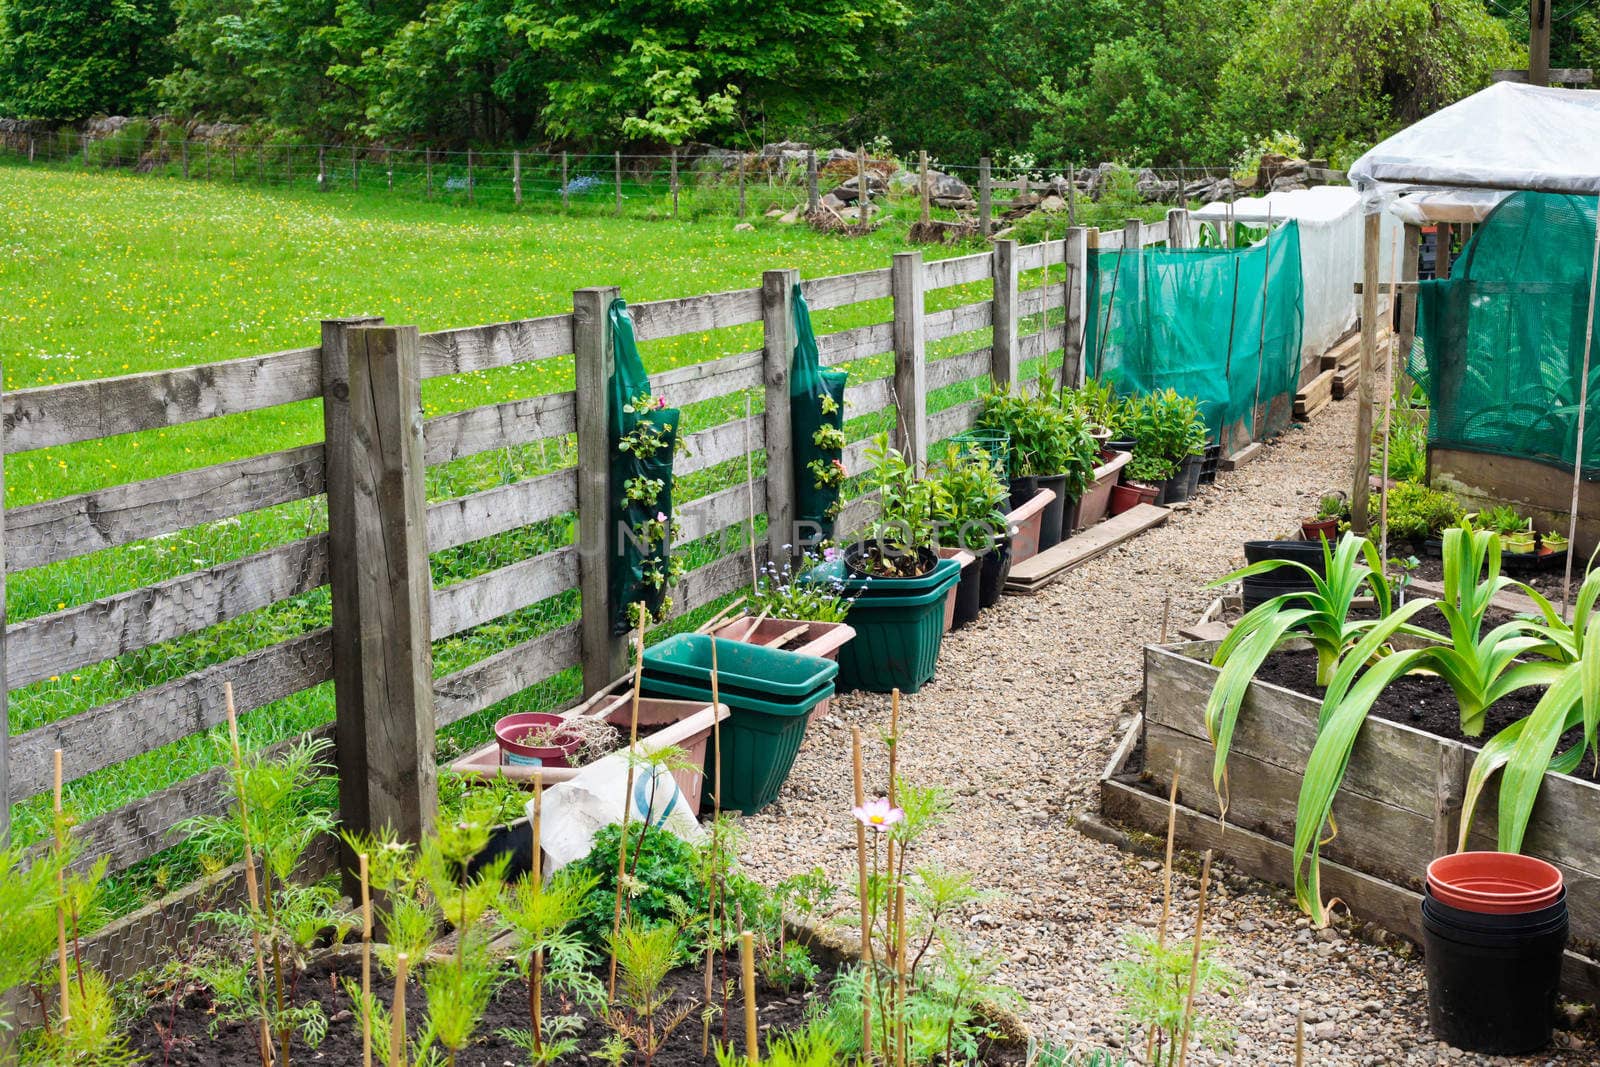 Vegetable garden in rural England in the summer